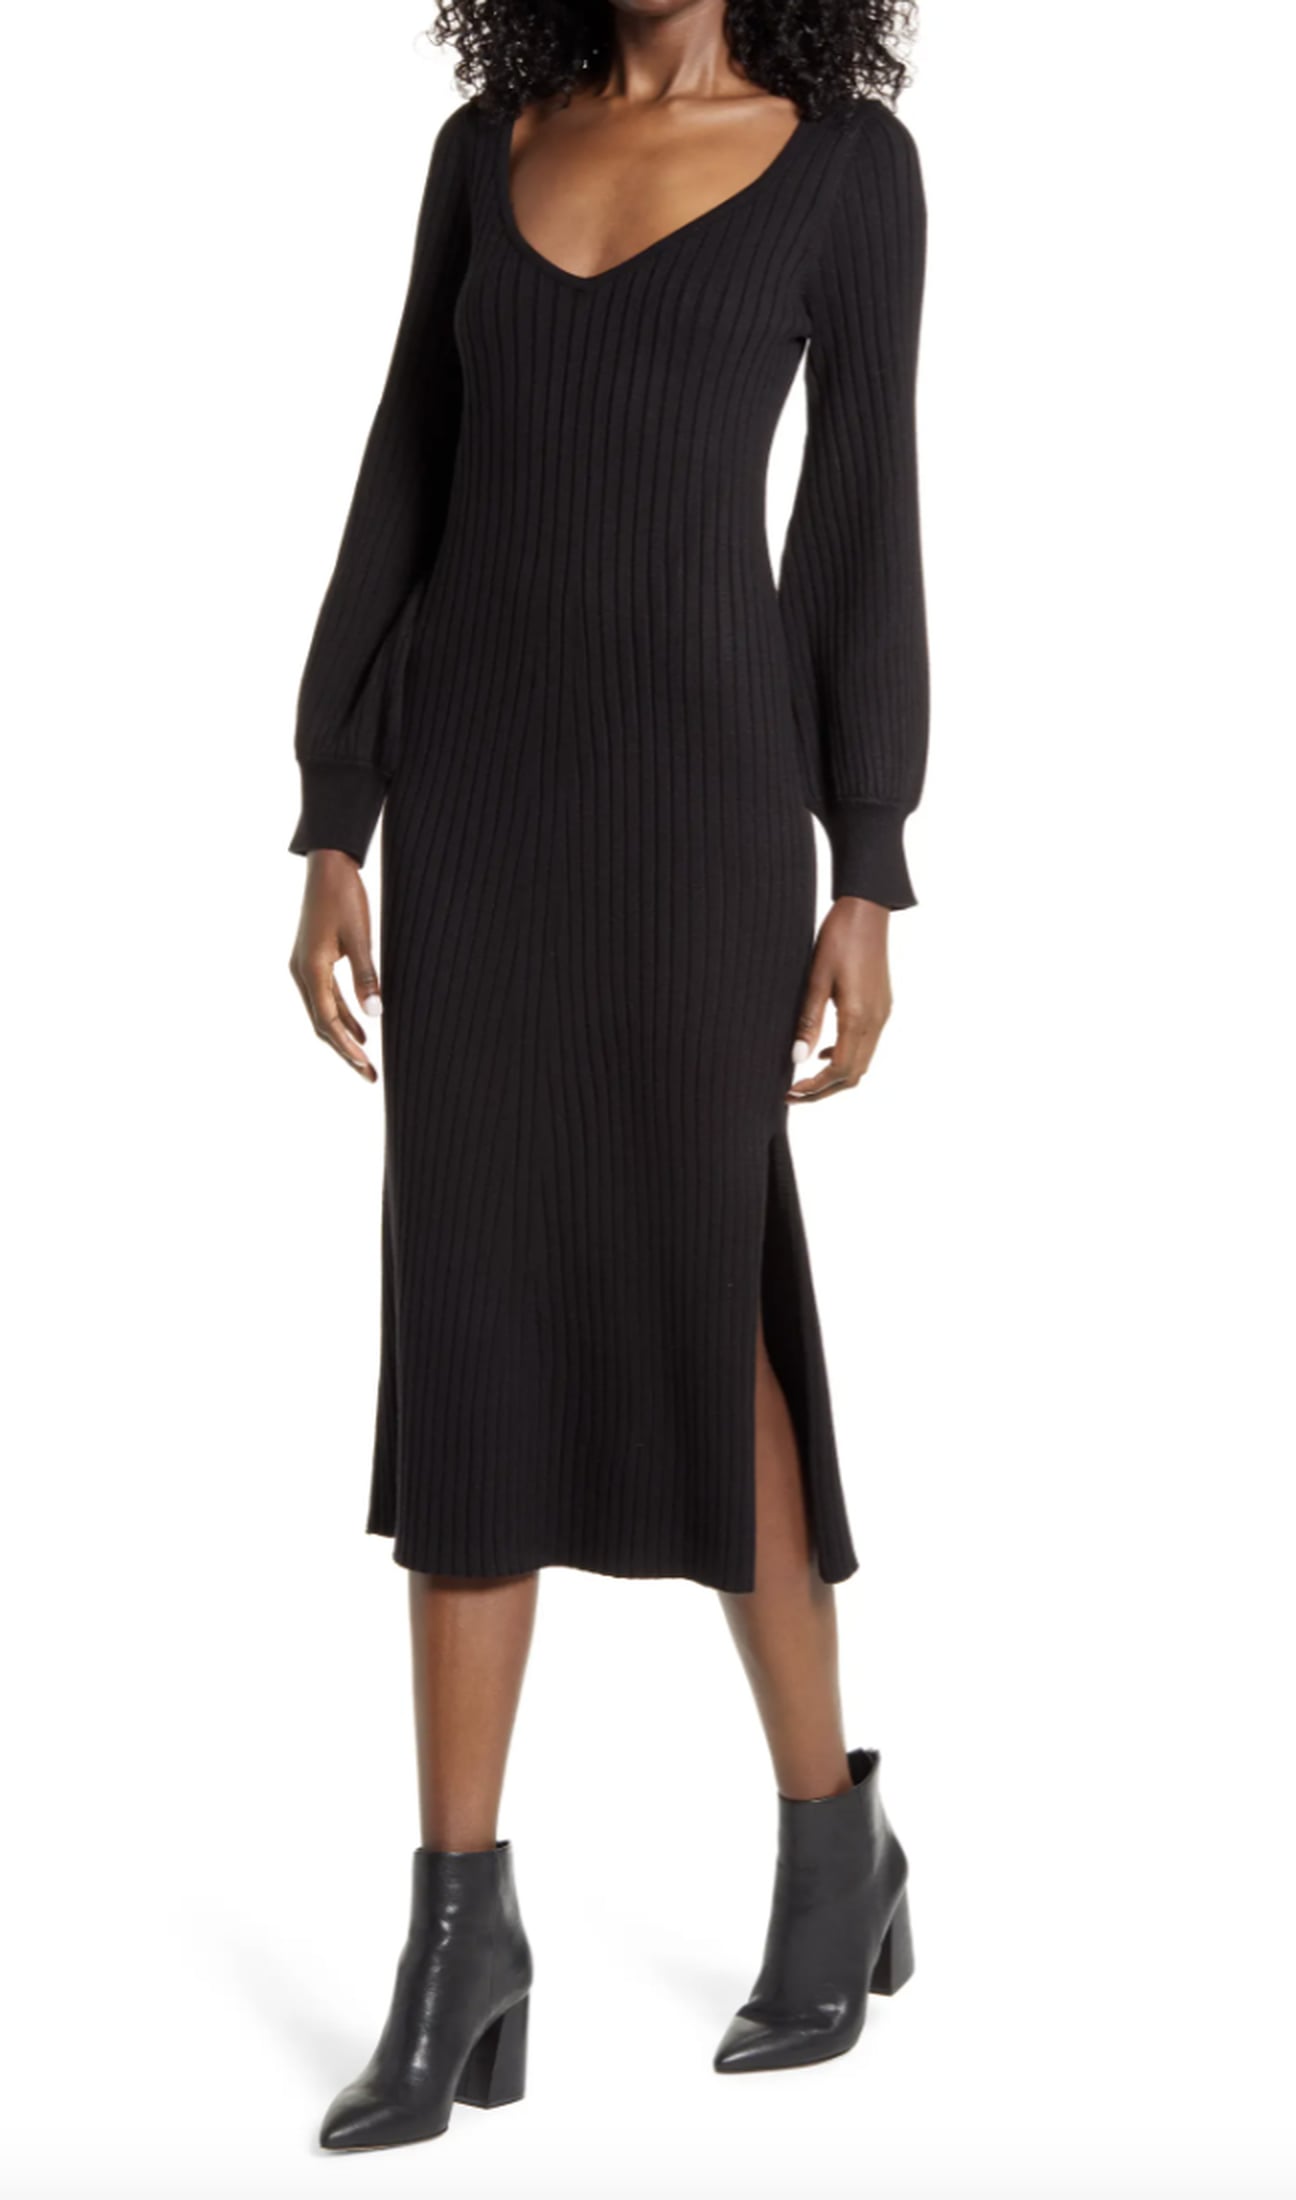 Best Nordstrom Dresses on Sale | POPSUGAR Fashion